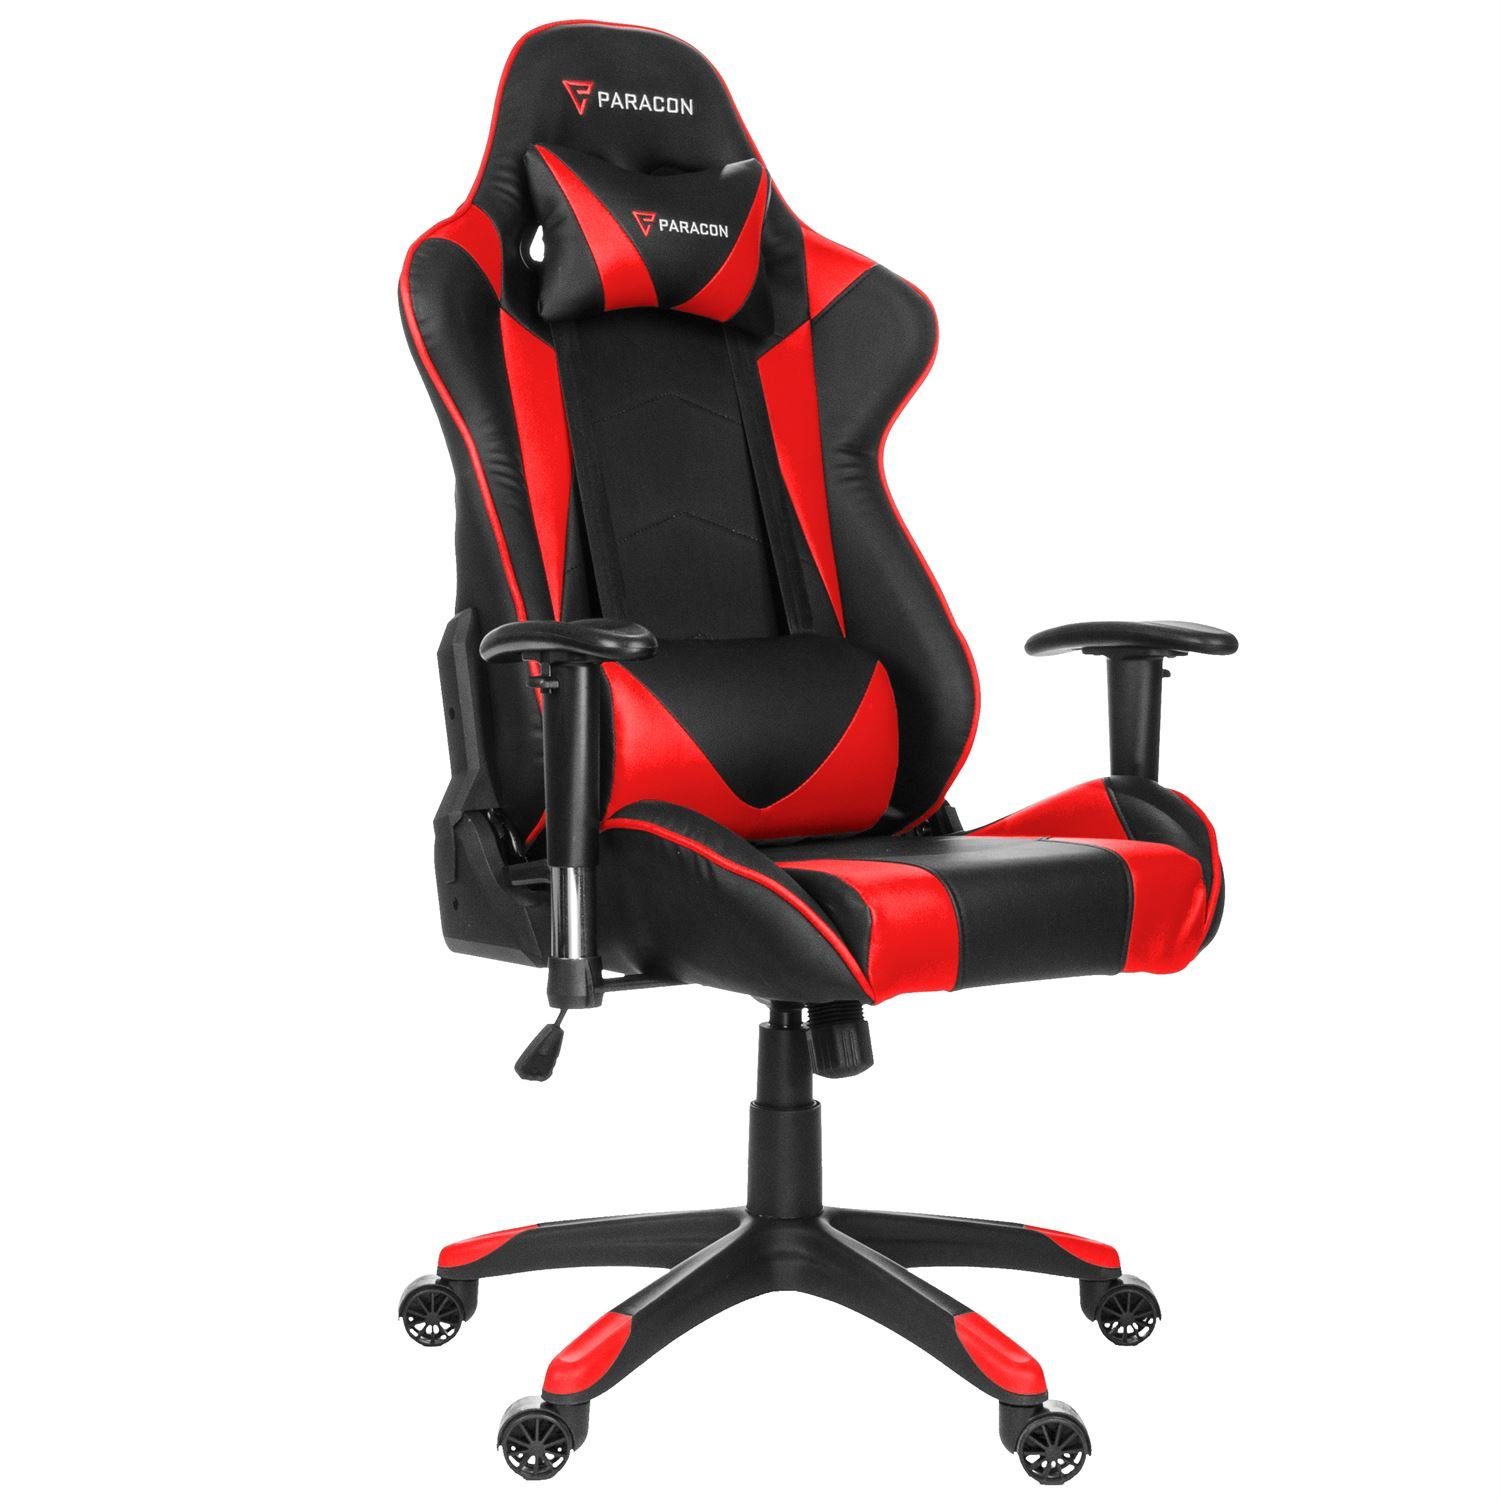 Knight Nackenkissen Gaming-Stuhl Stuhl inkl. Rot ebuy24 Gaming und Paracon